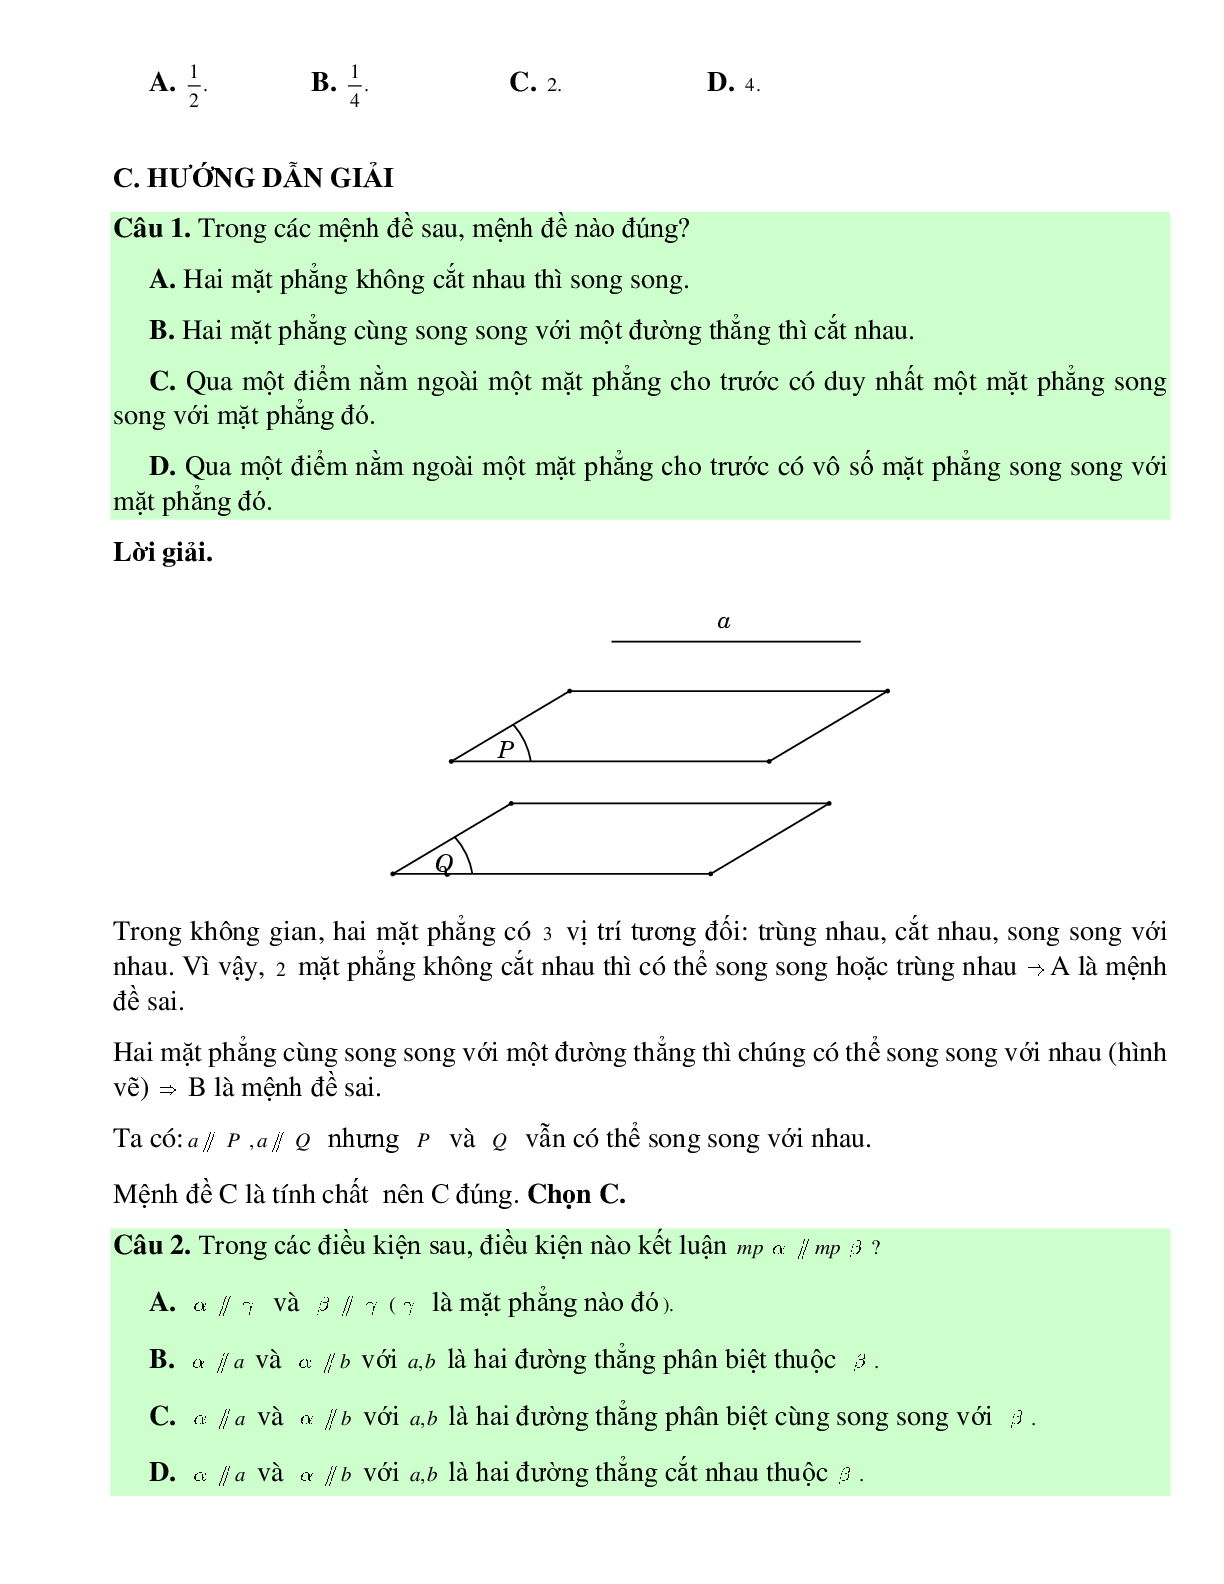 Bài tập Toán hình 11 Bài 4 có đáp án: Hai mặt phẳng song song (trang 7)